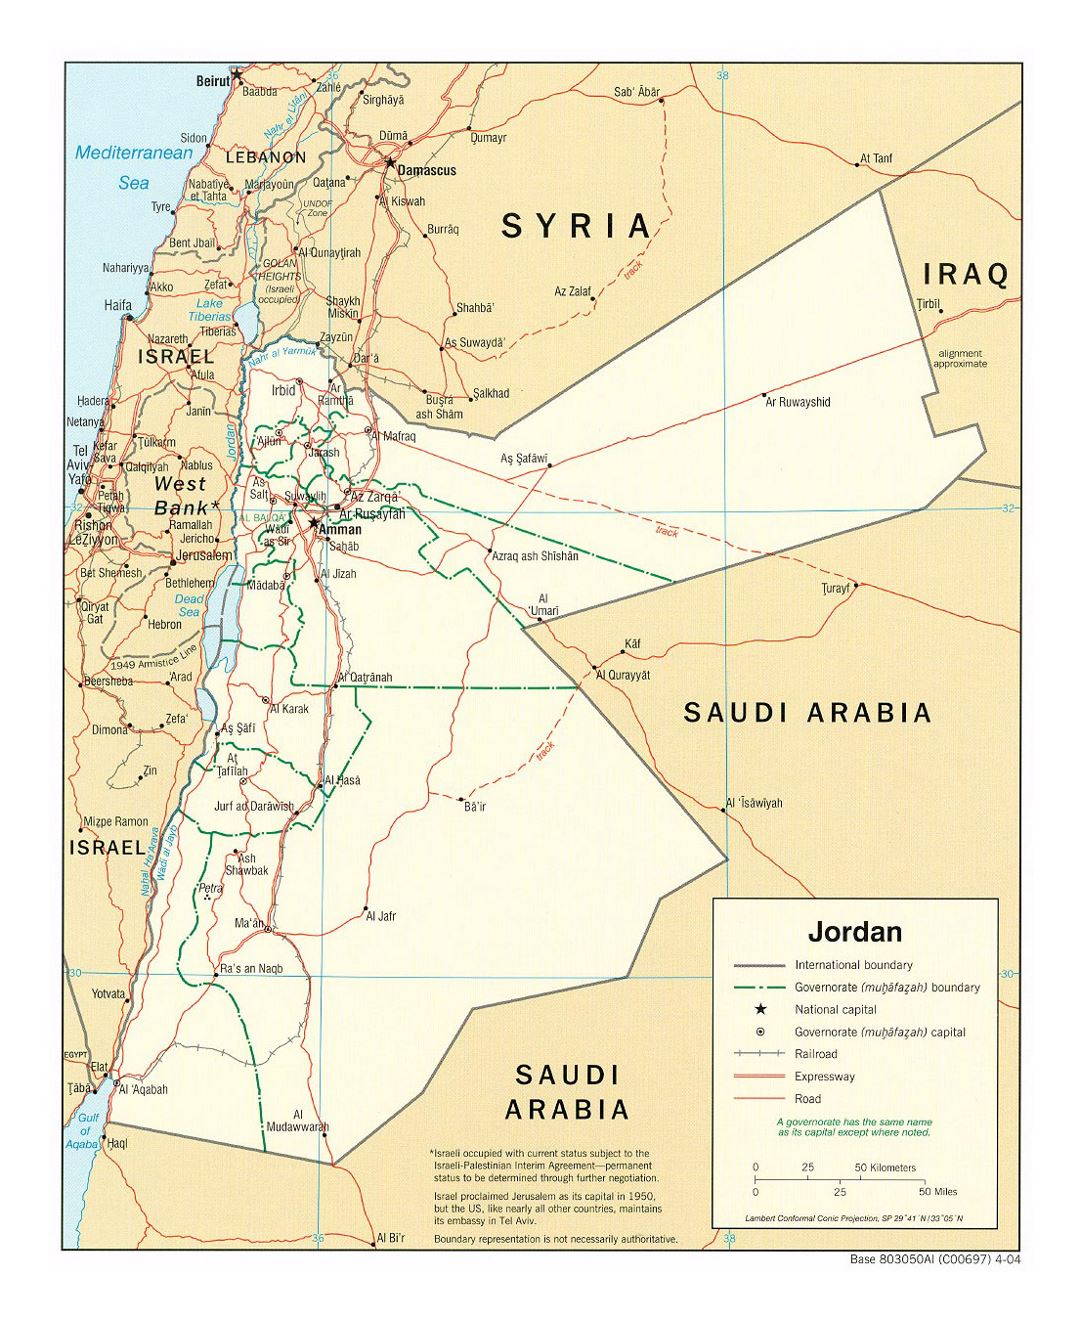 Detallado mapa político y administrativo de Jordania con carreteras, ferrocarriles y principales ciudades - 2004